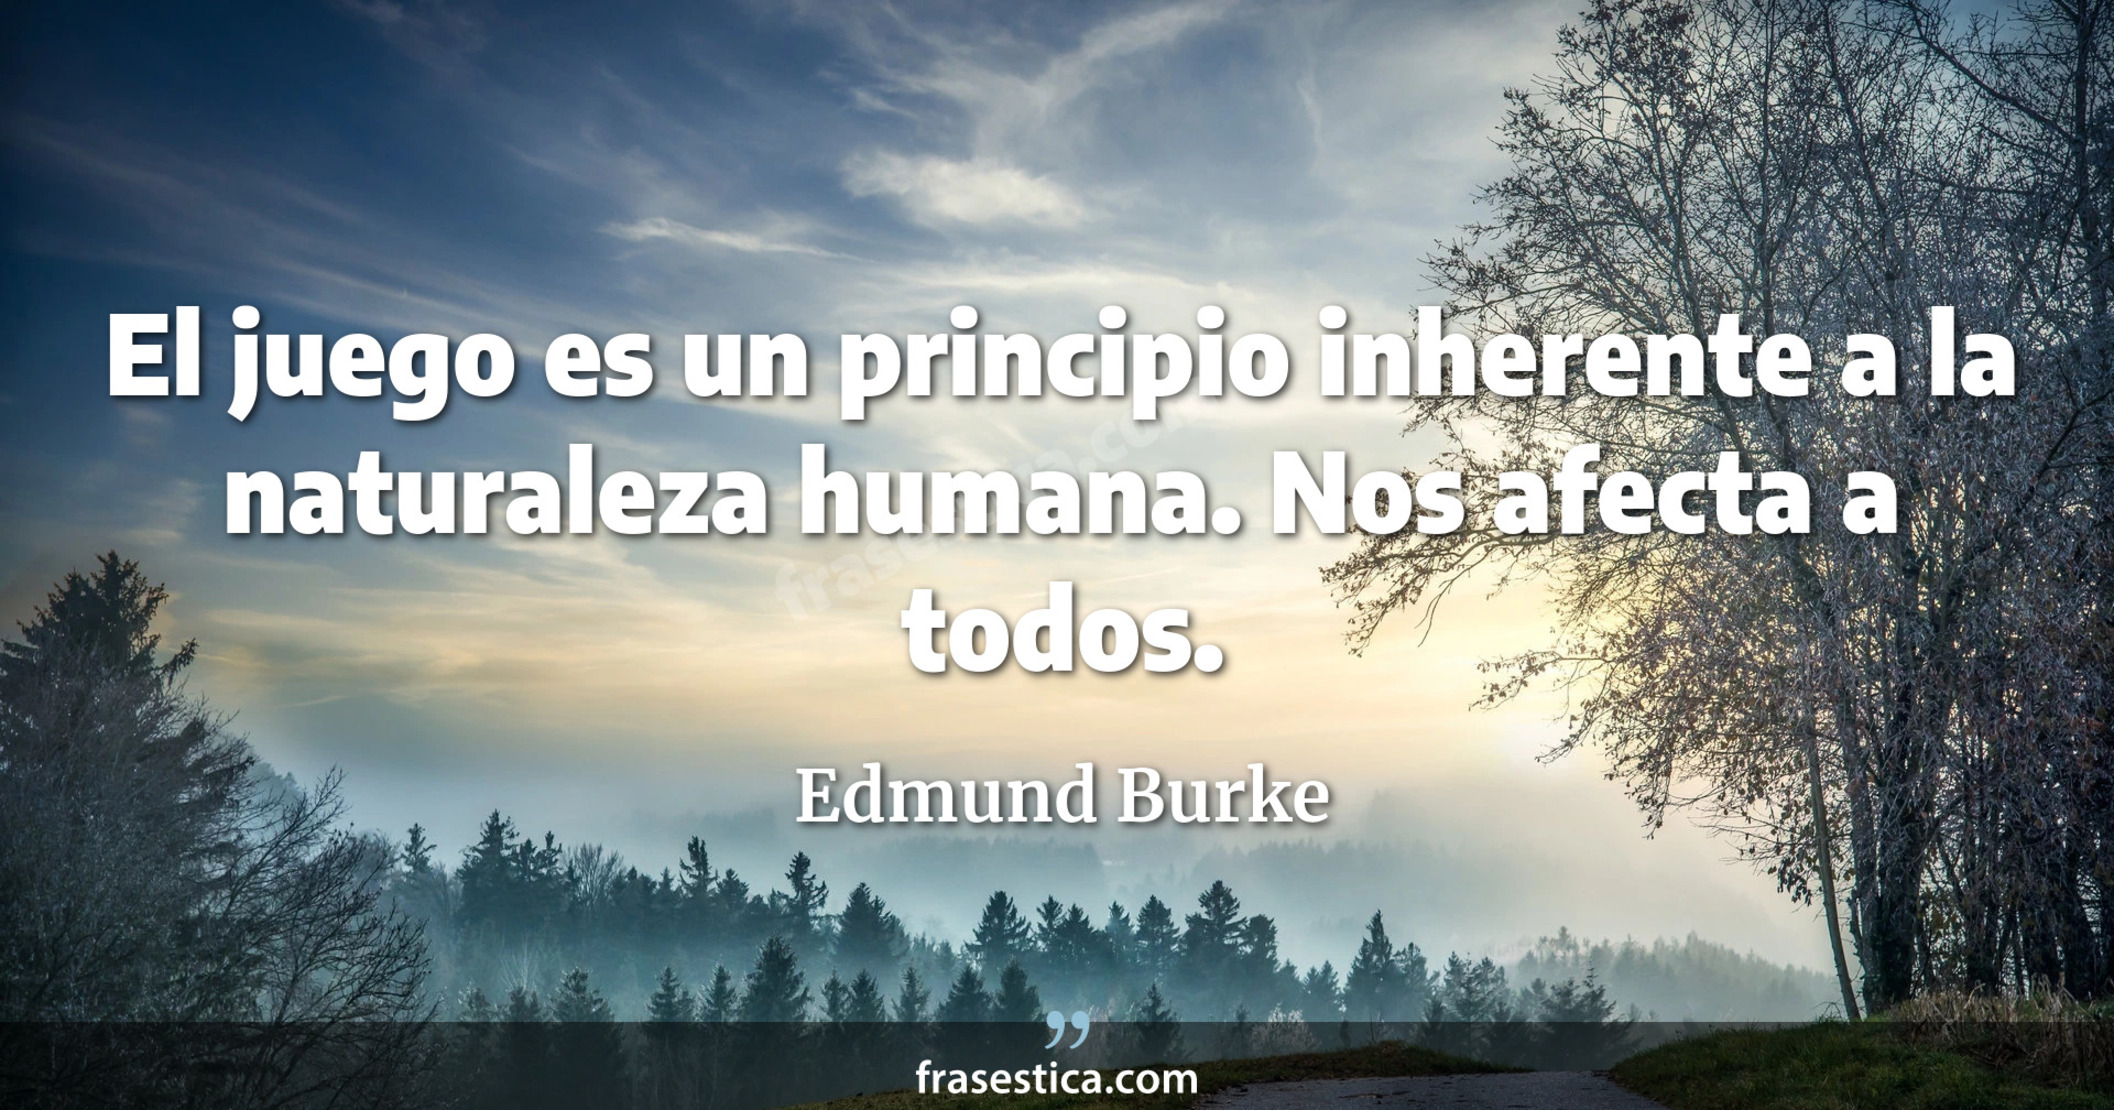 El juego es un principio inherente a la naturaleza humana. Nos afecta a todos. - Edmund Burke